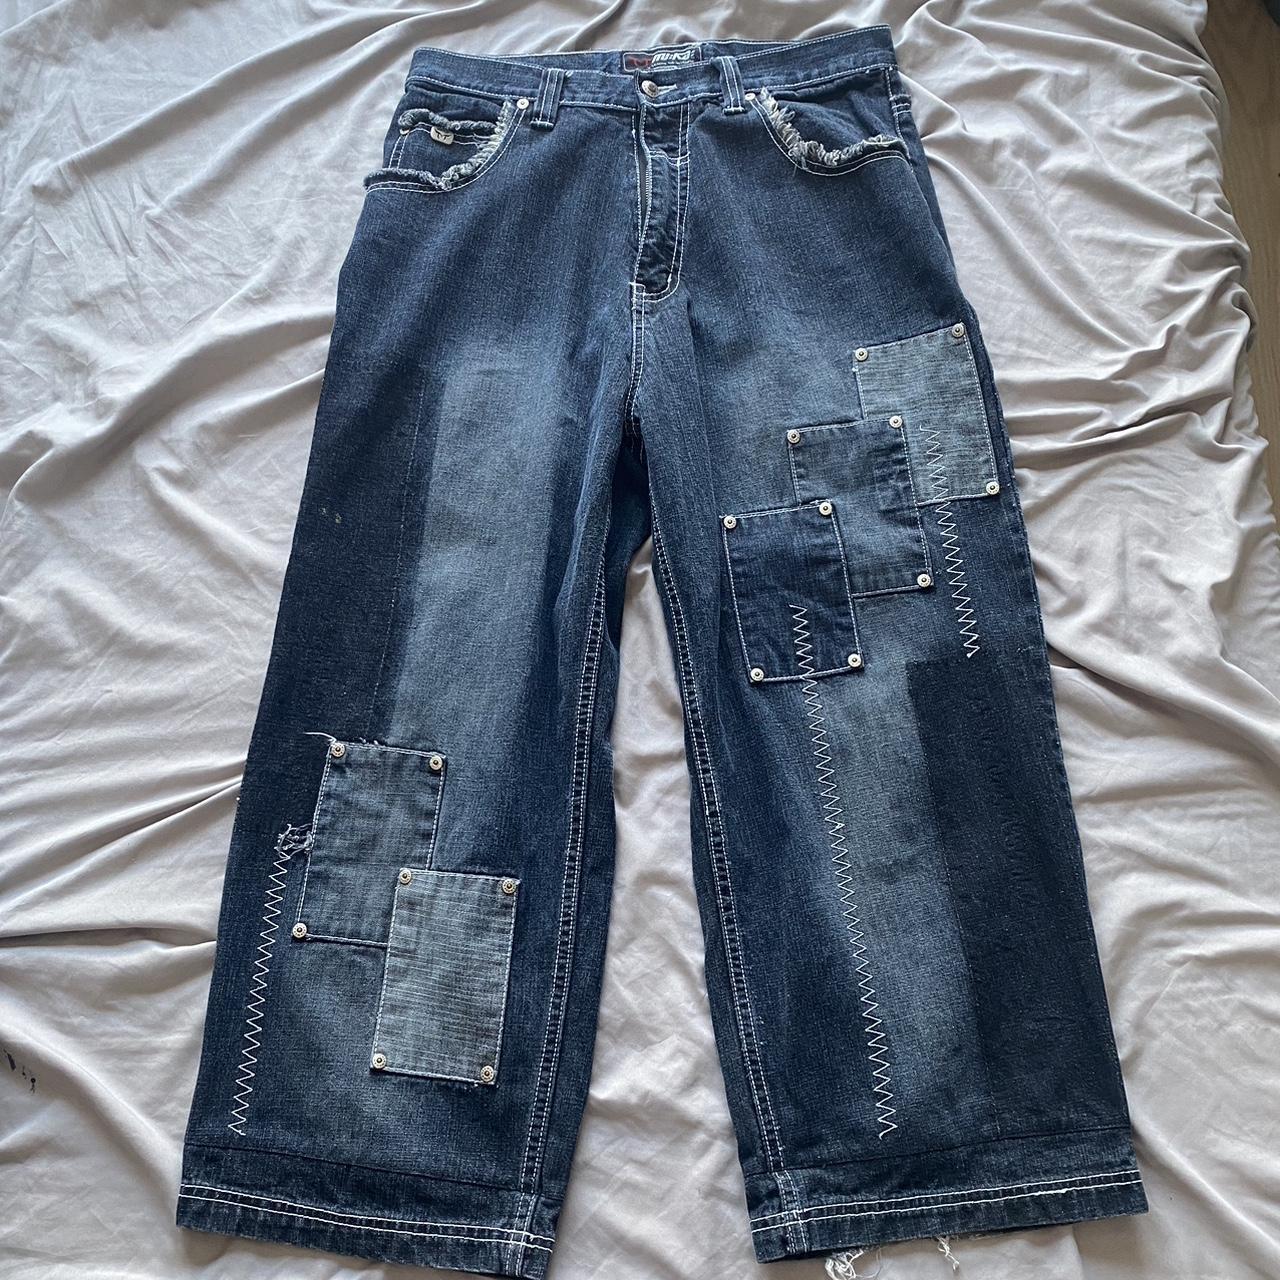 MUKA Jeans super baggy super rare fits 30x30-29 (I’m... - Depop